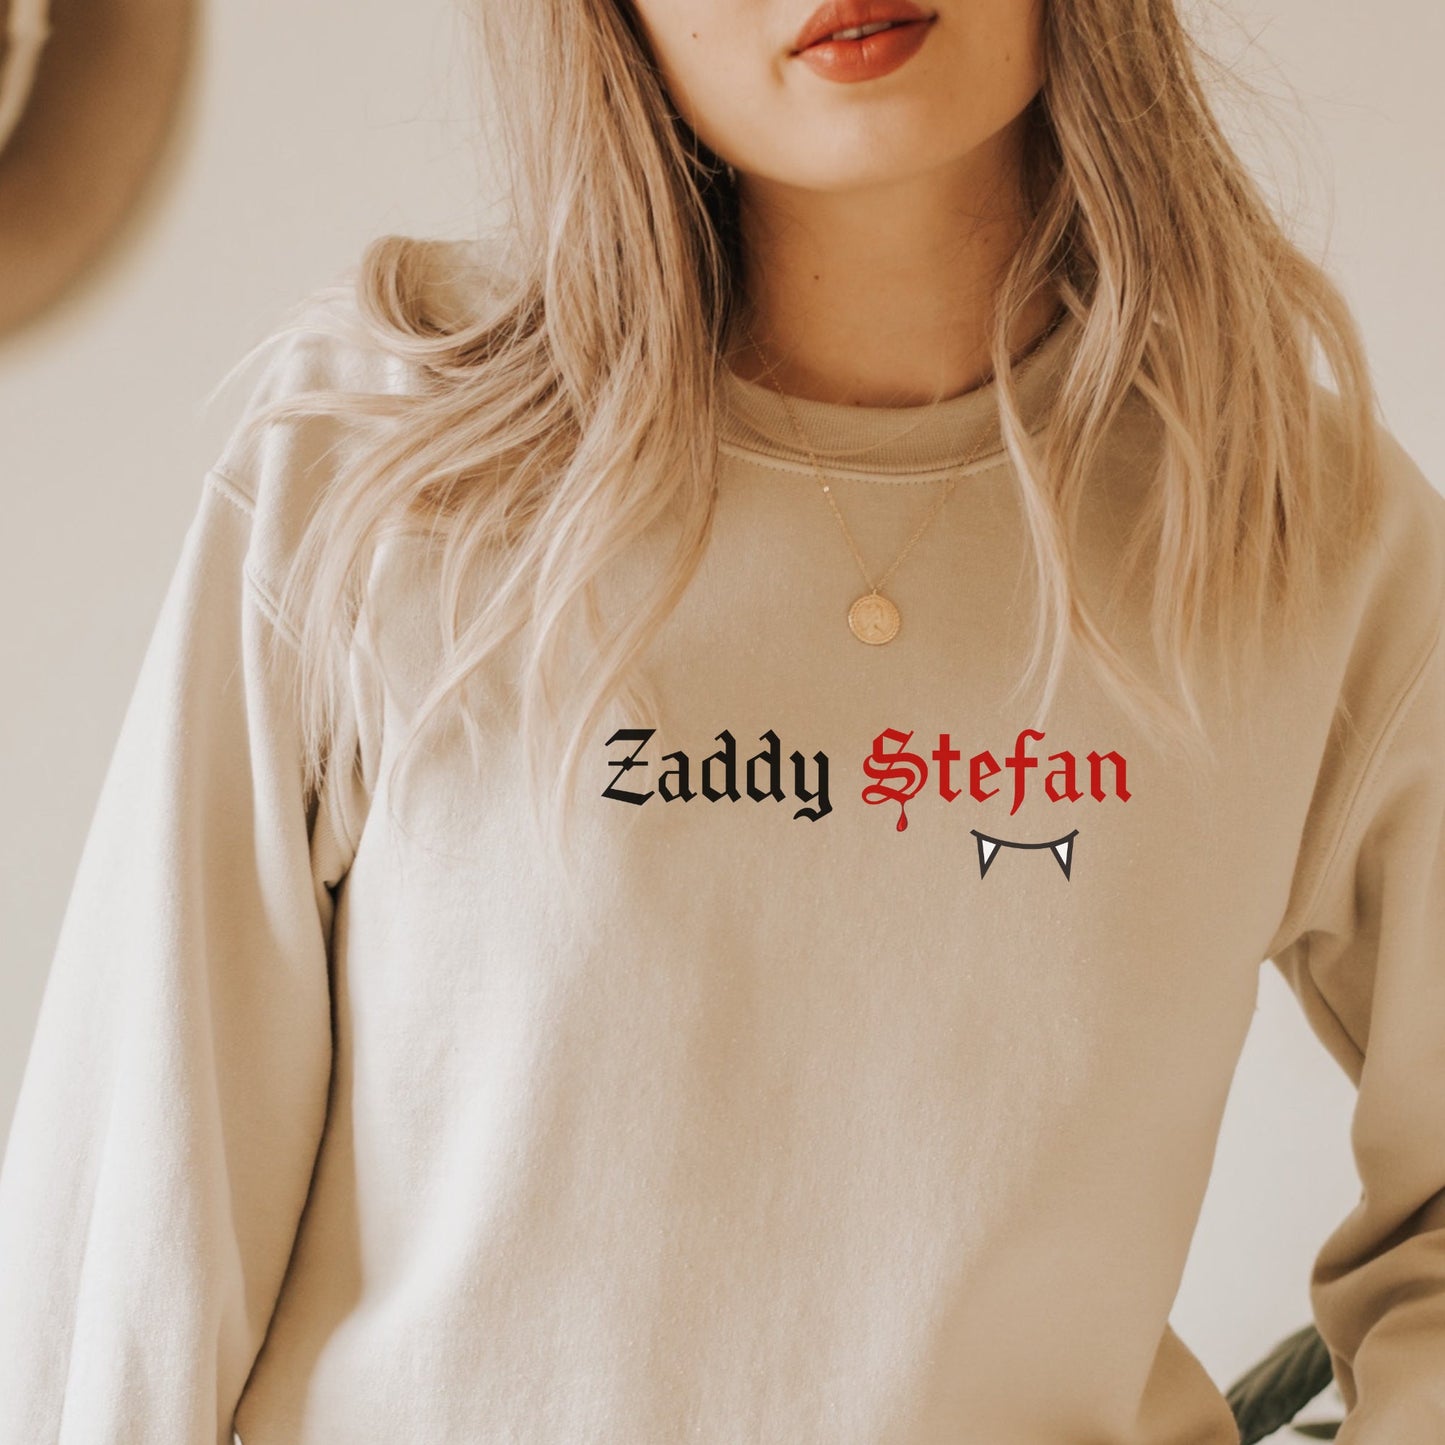 Stefan Salvatore Sweatshirt,TVD Sweatshirt, The Vampire Diaries Sweater, TVD Fan, Tvd merch